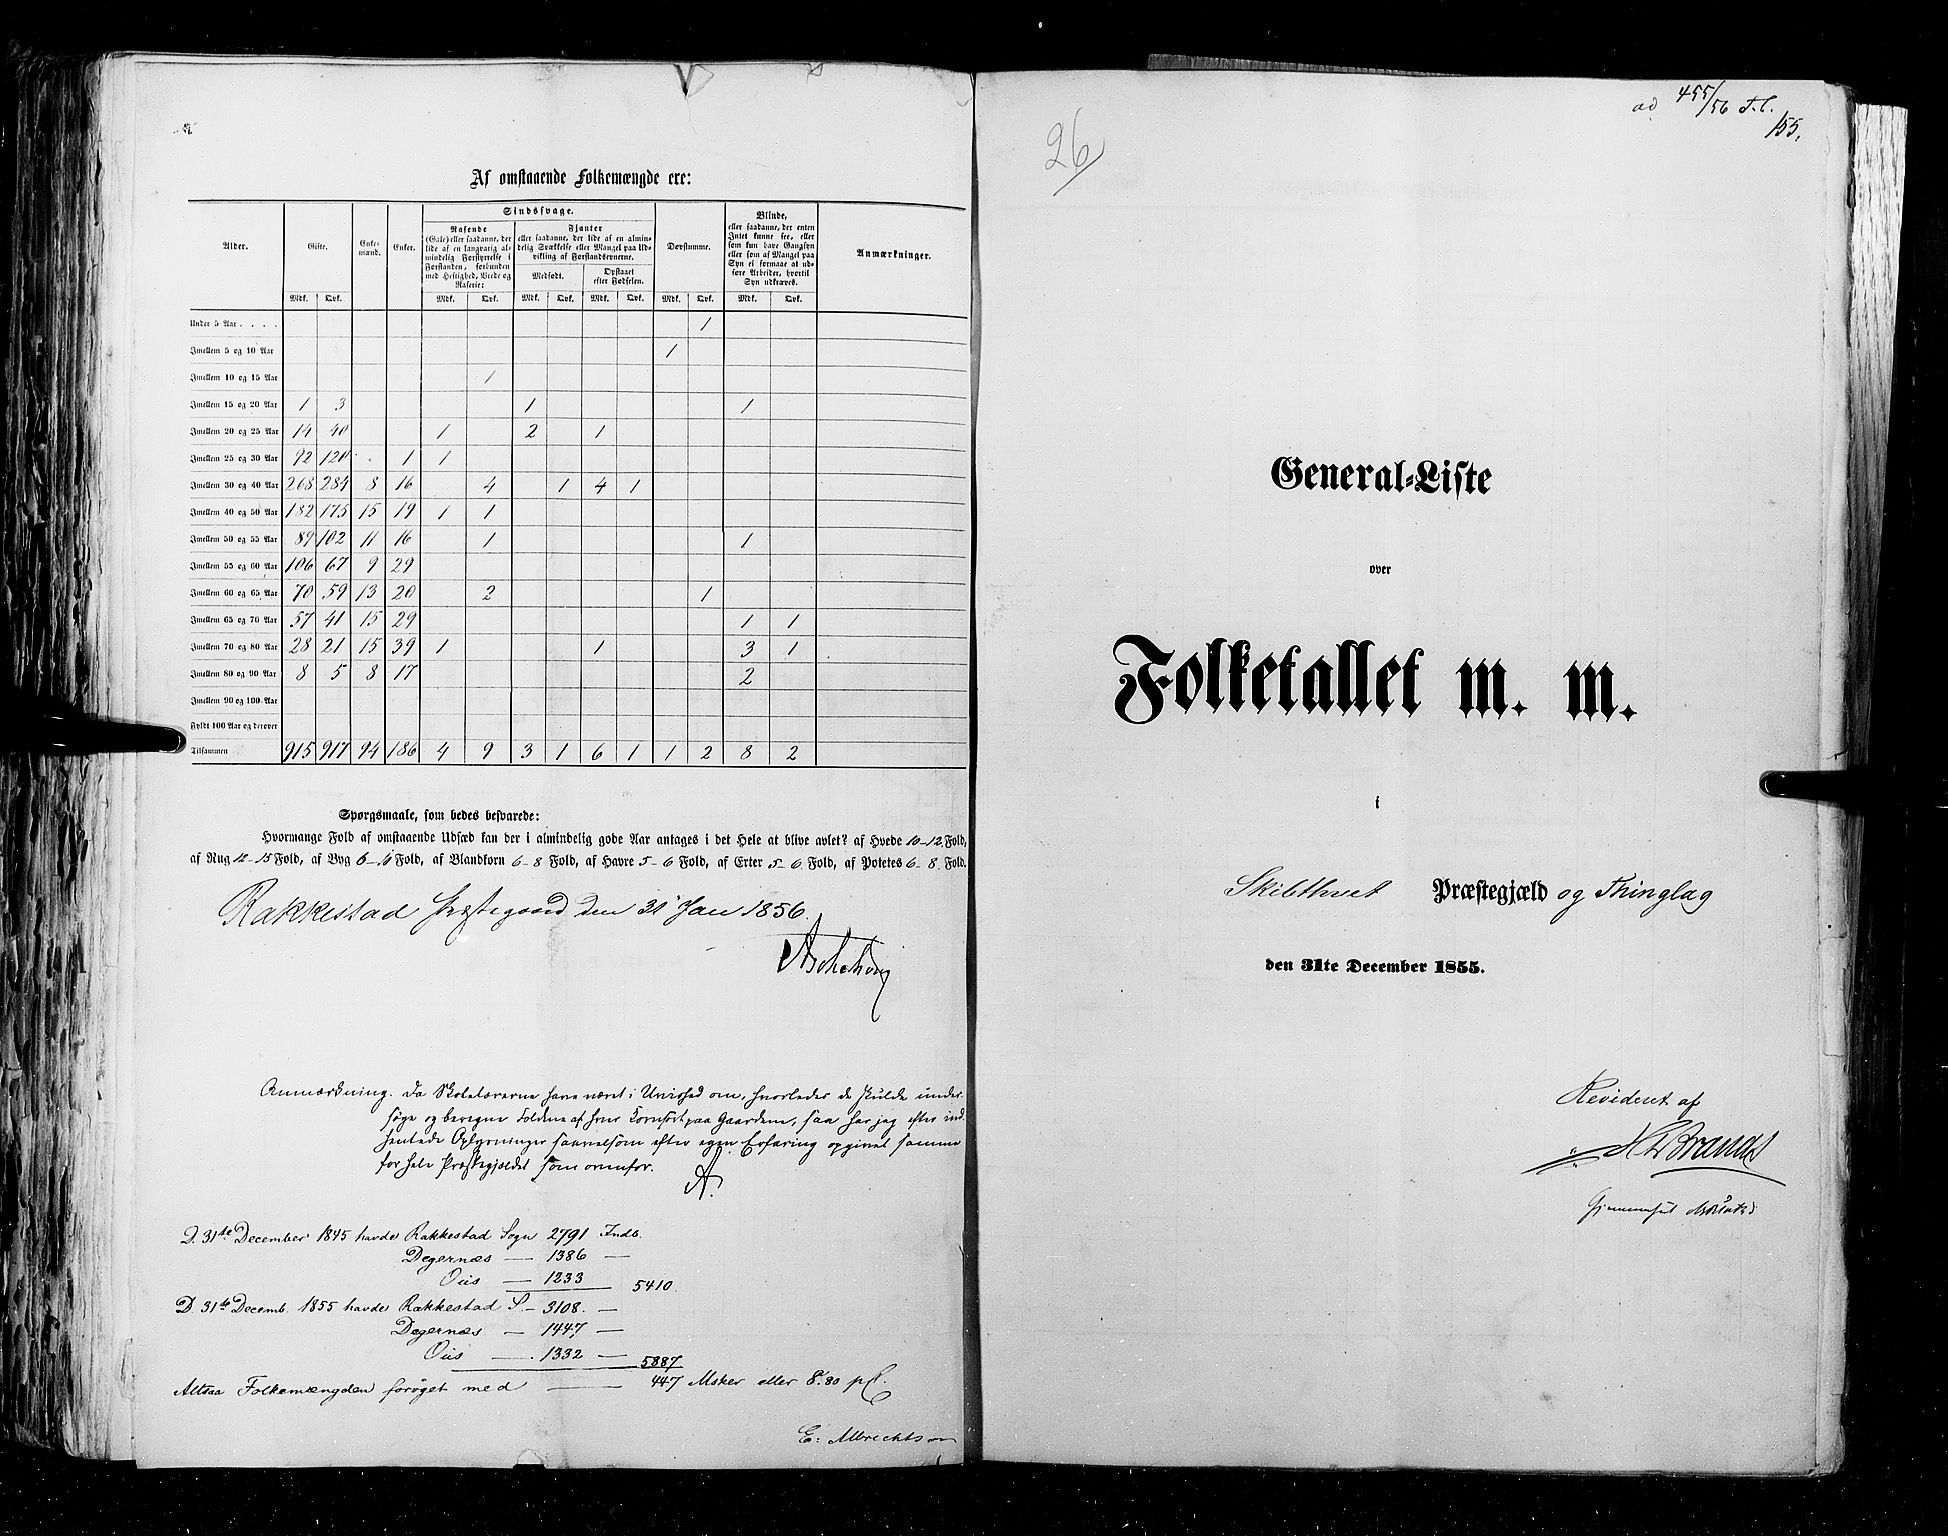 RA, Folketellingen 1855, bind 1: Akershus amt, Smålenenes amt og Hedemarken amt, 1855, s. 155